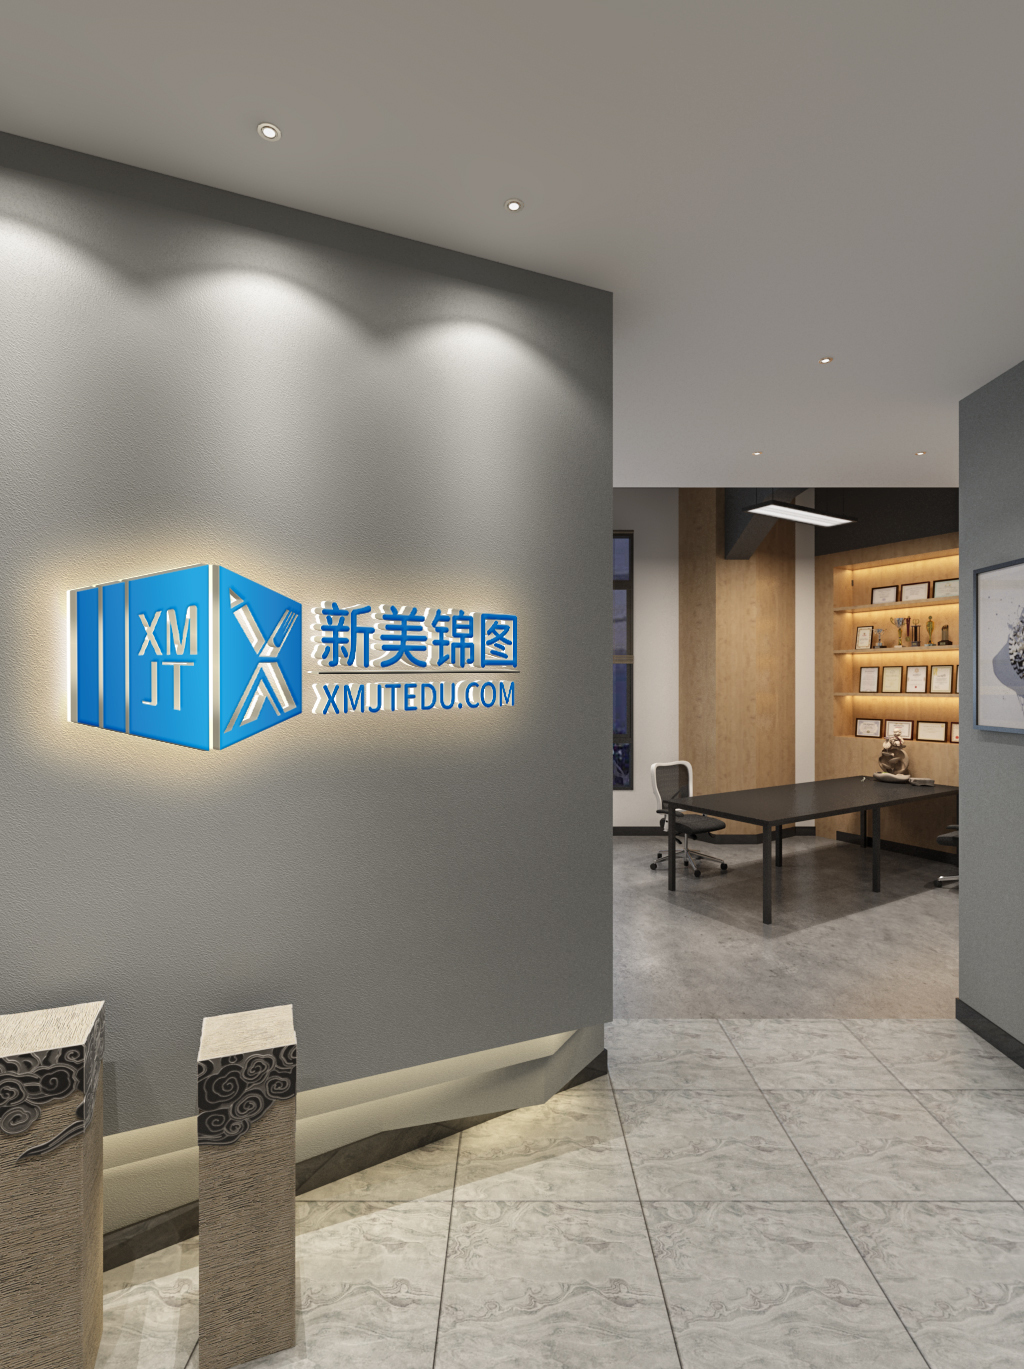 北京新美锦图教育咨询有限公司logo设计图4